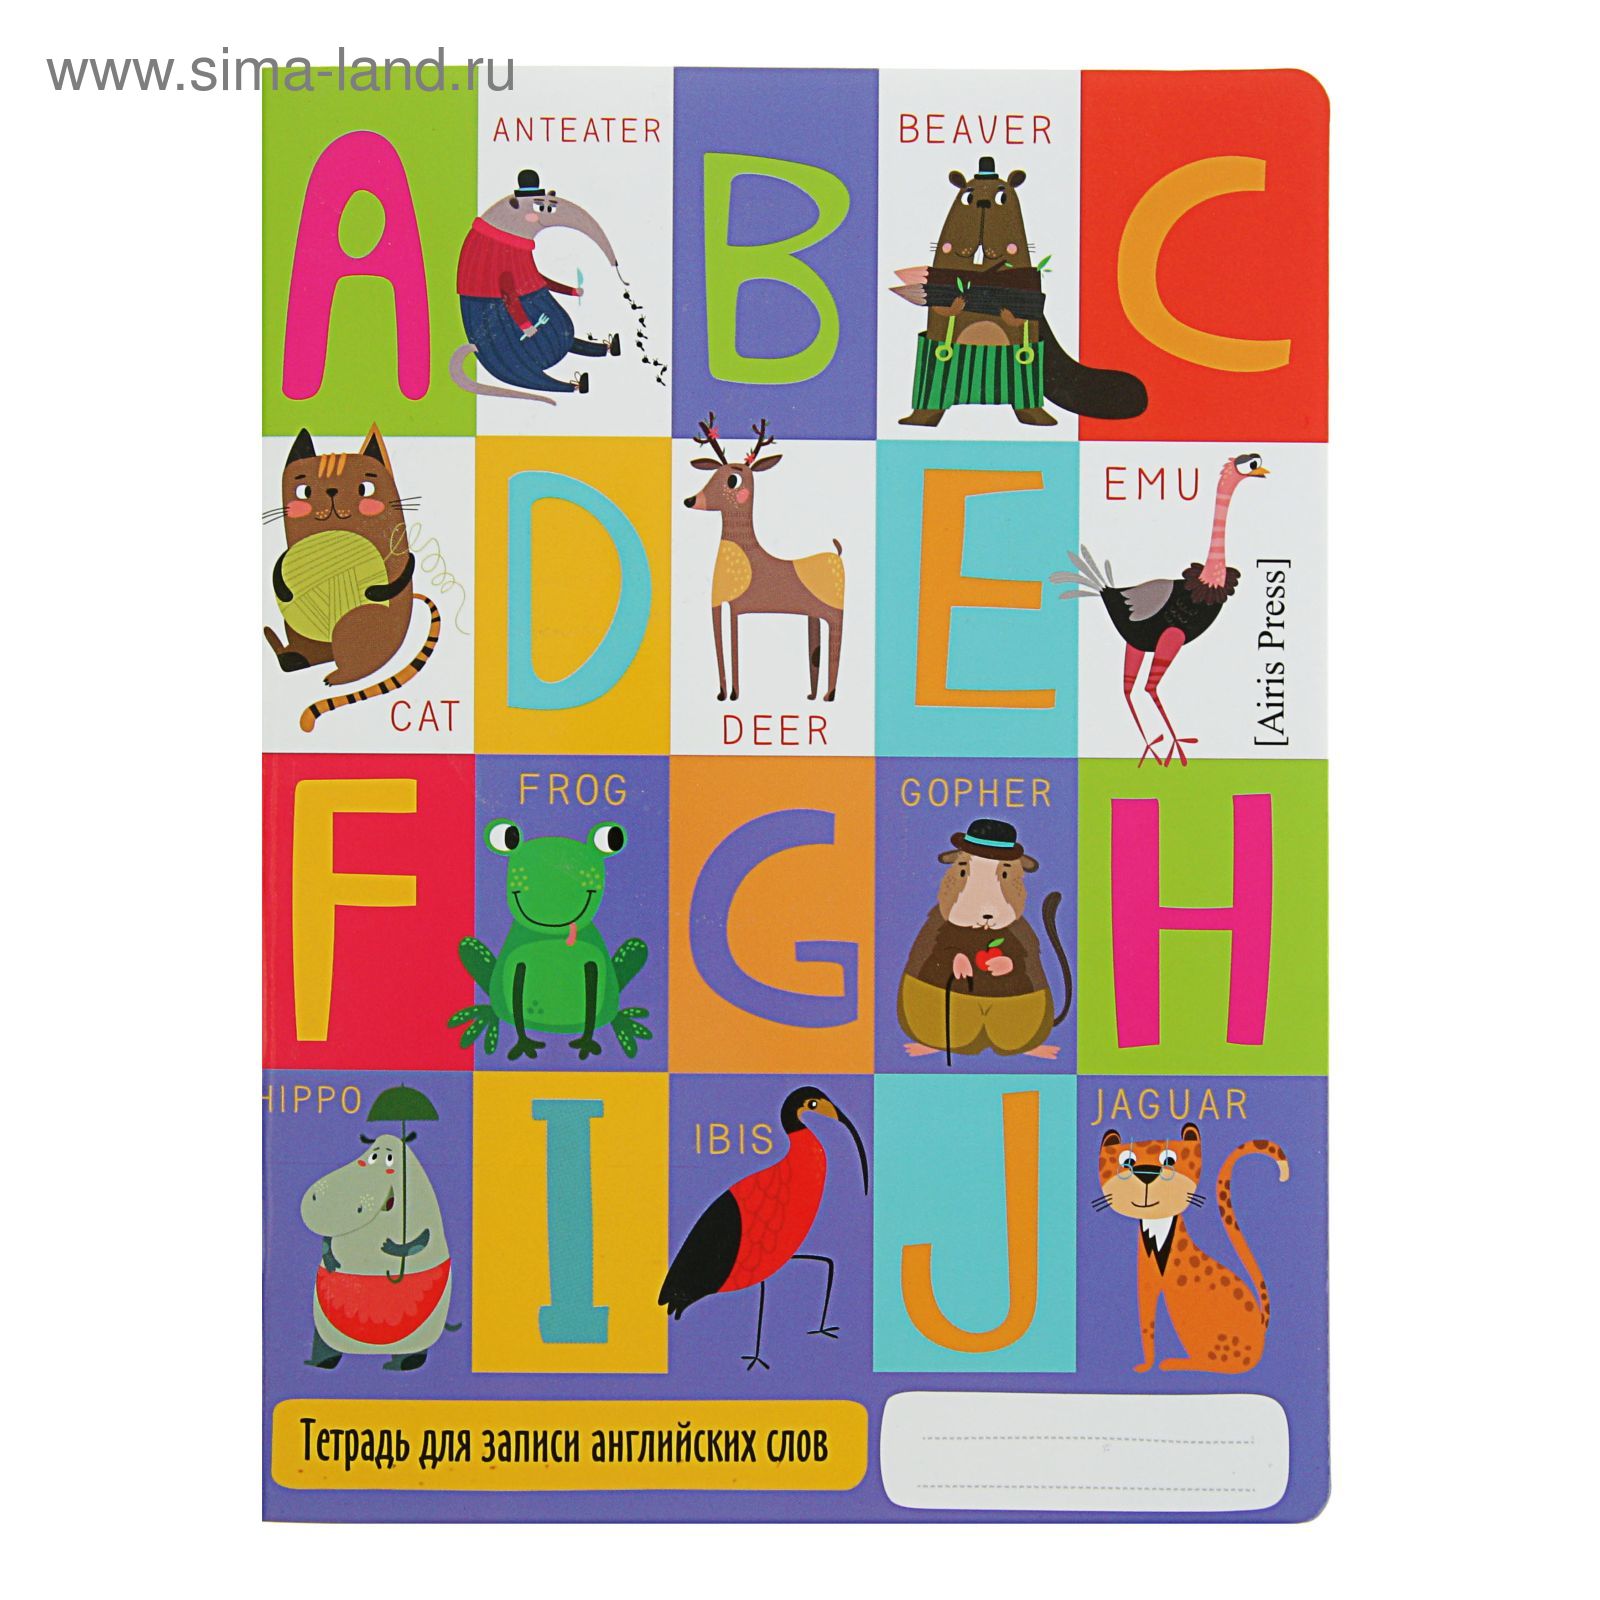 Тетрадь для записи английских слов в начальной школе "Веселые буквы" арт.25980